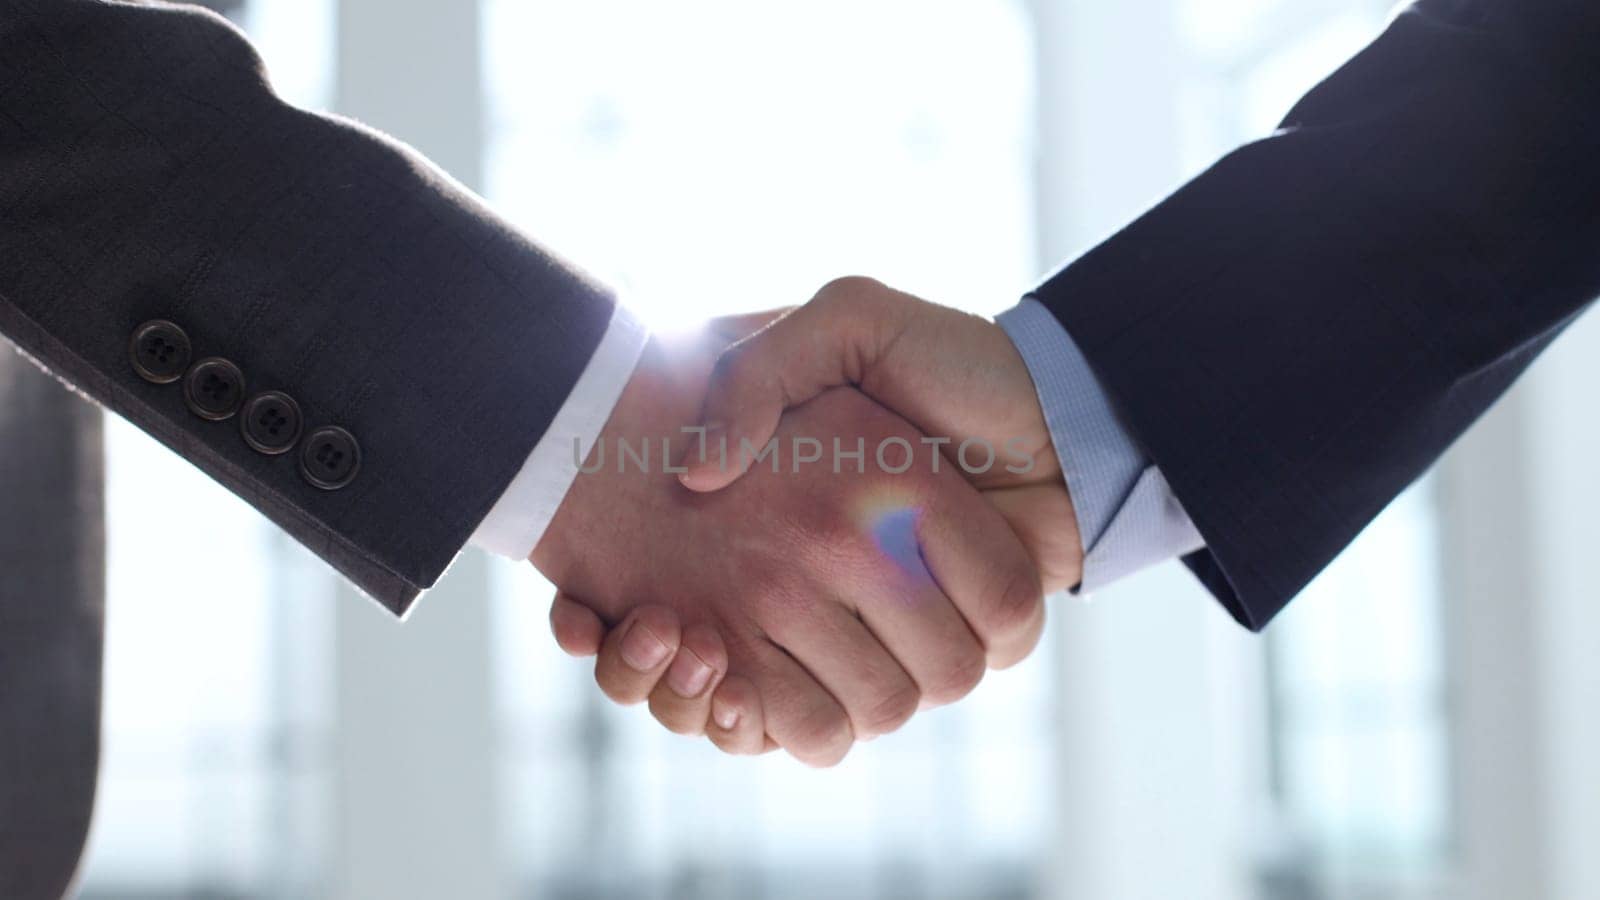 Handshake after a deal, successful deal, teamwork.